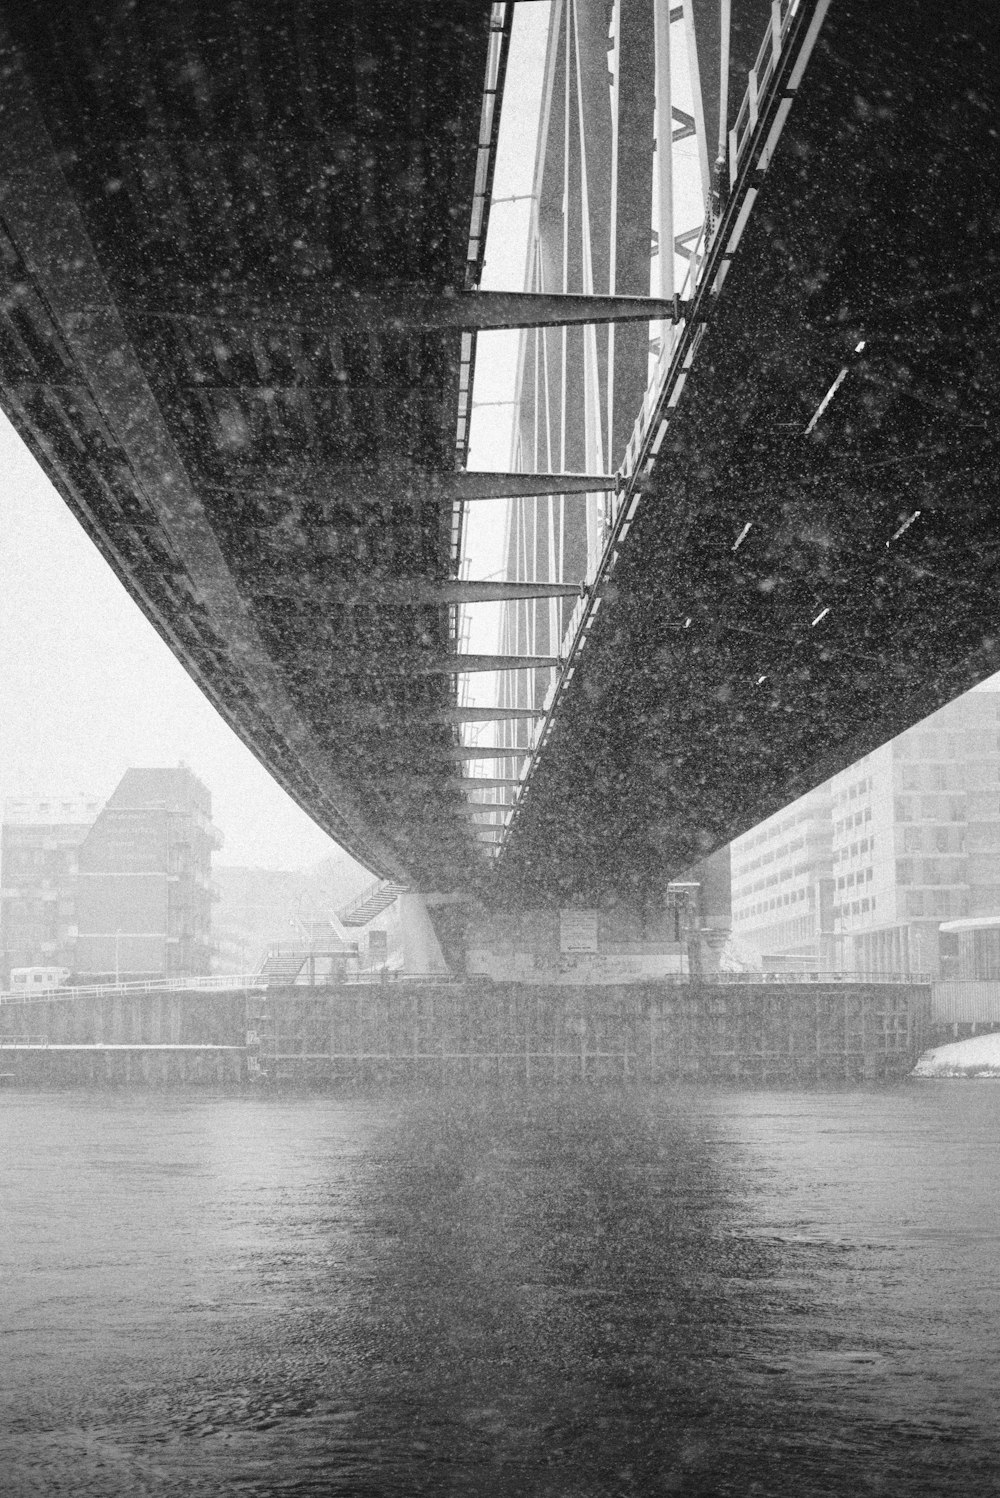 fotografia architettonica in scala di grigi del ponte metallico sottostante